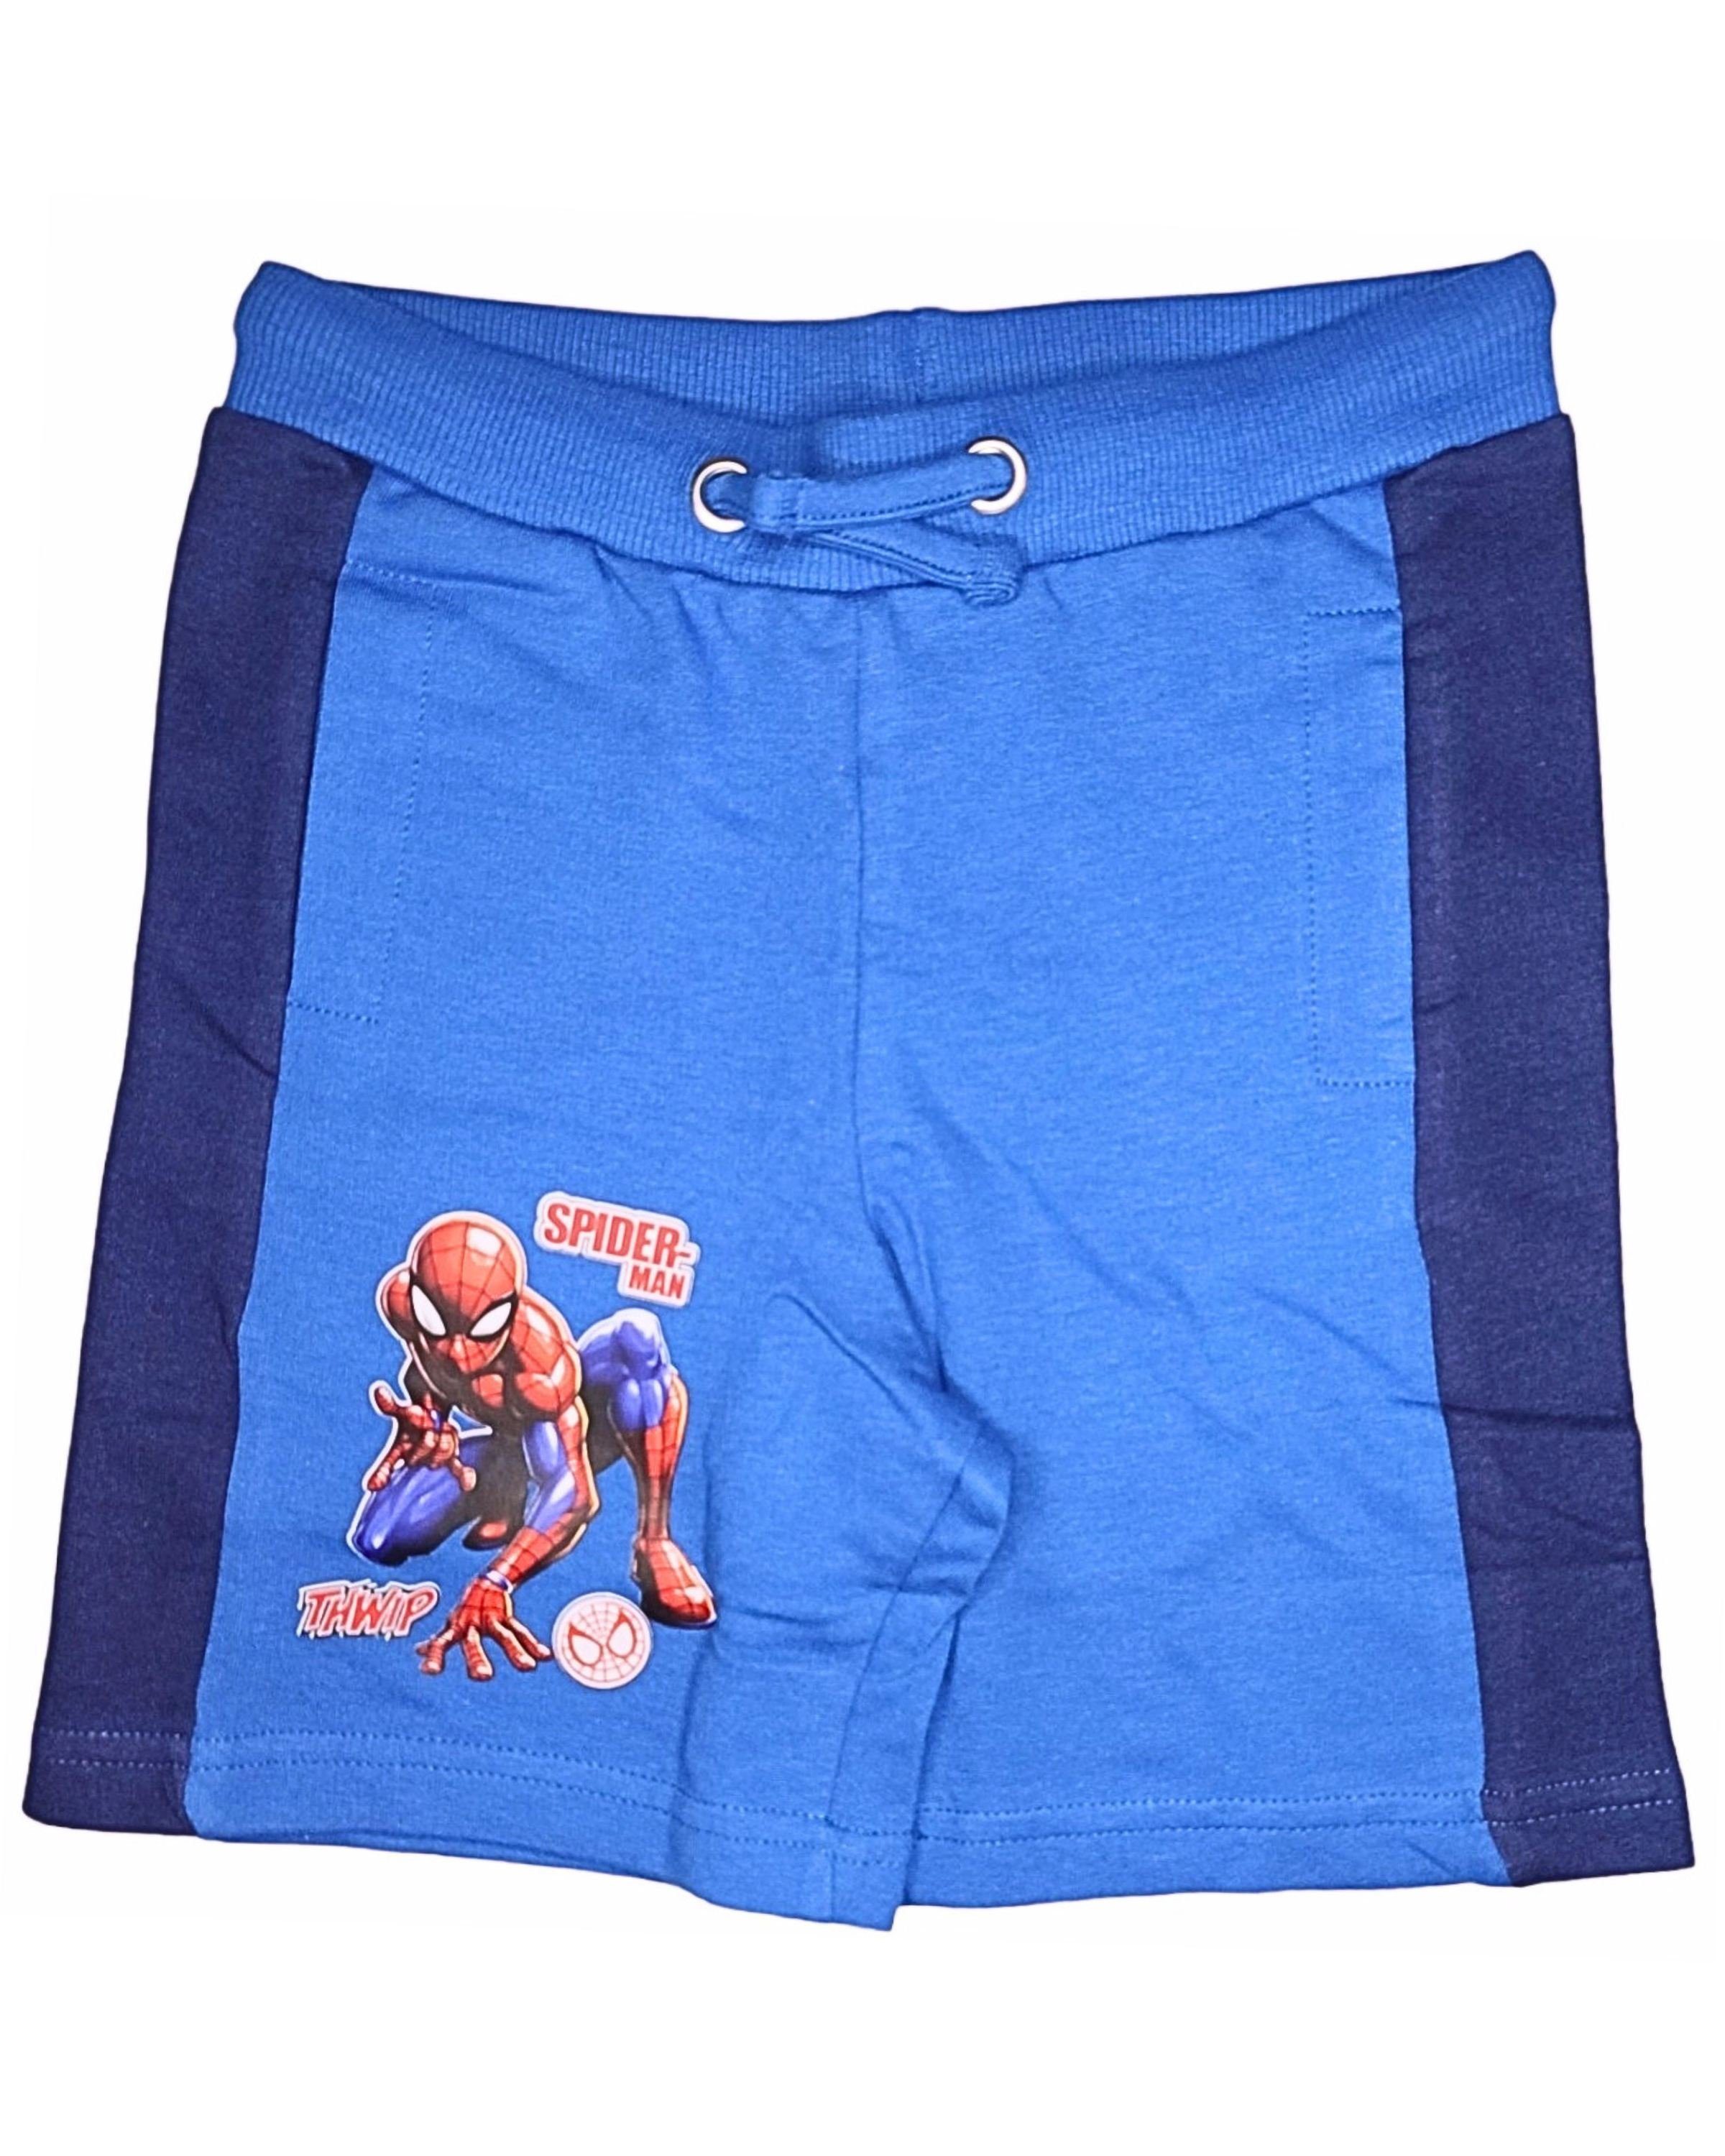 Spiderman Shorts Marvel Jungen kurze Hose aus Baumwolle Gr. 98 - 128 cm | Sportshorts